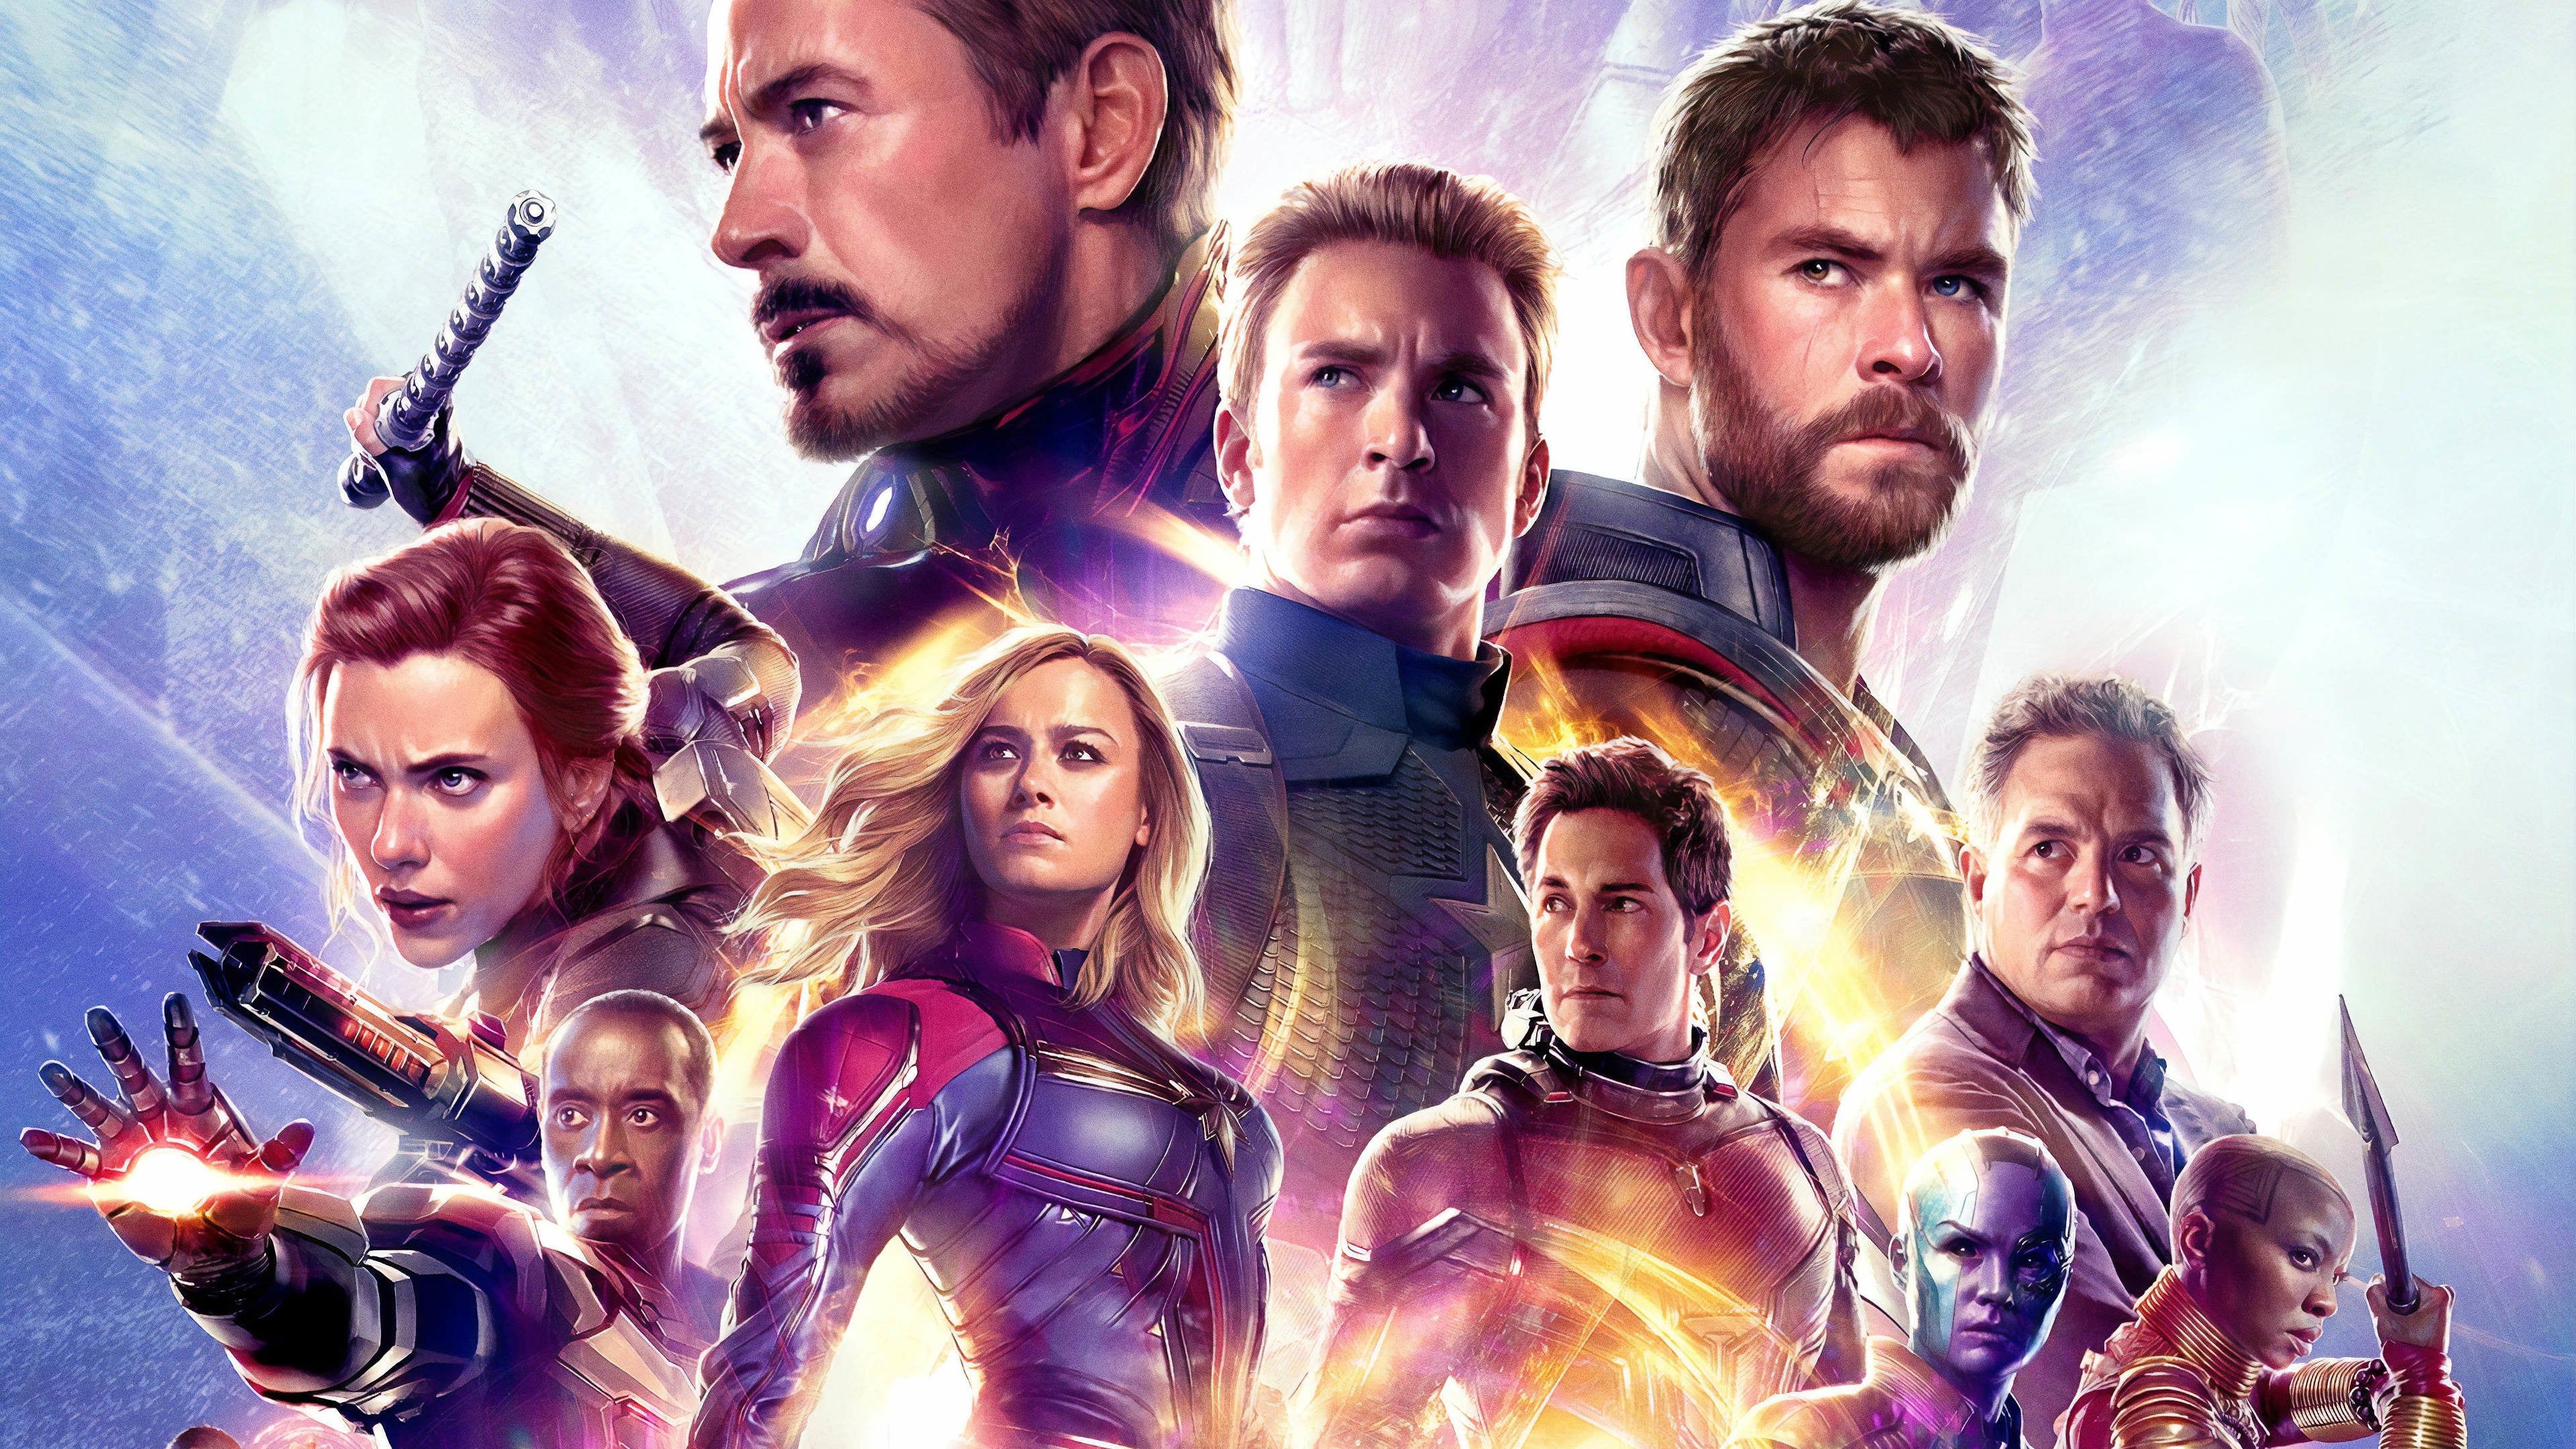 Marvel's Avengers Game Description Reveals 'Cinematic Storytelling